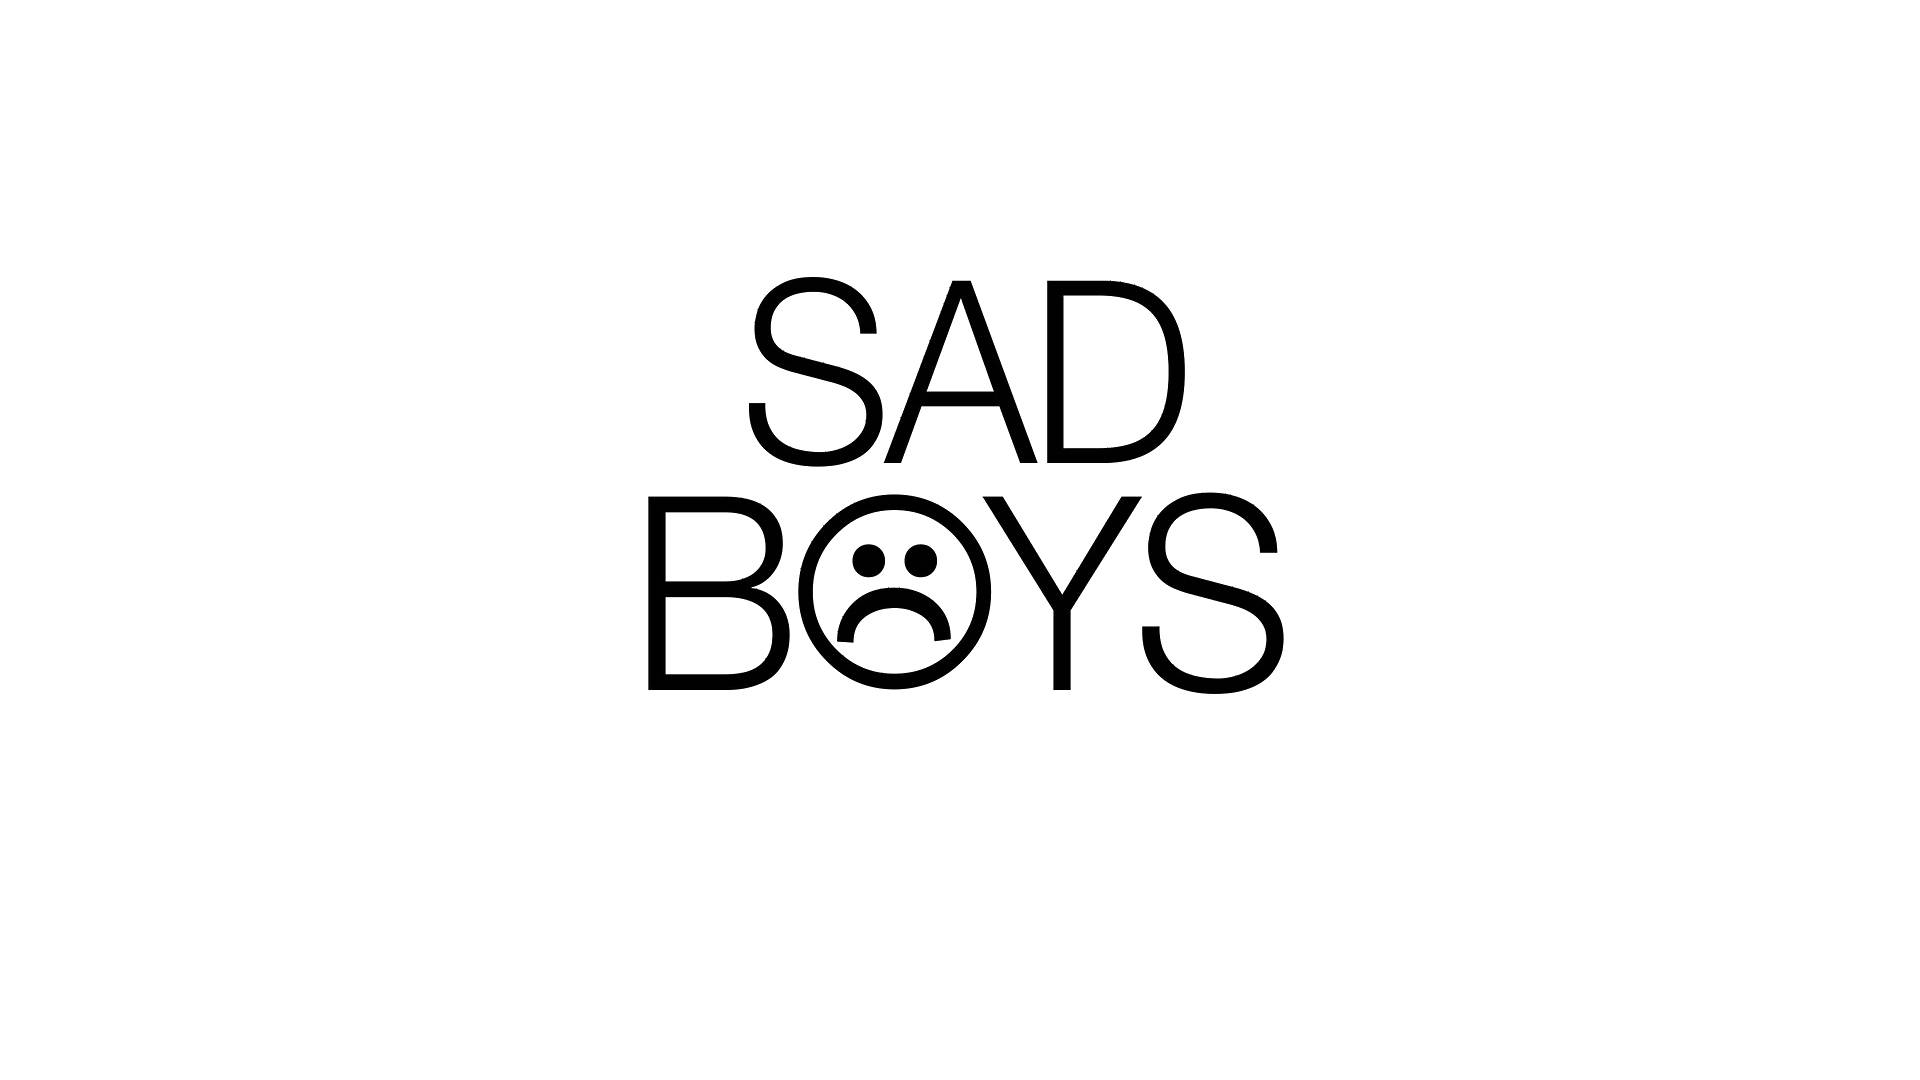 Sad Boys Typography Med Ikoniske Symboler Wallpaper